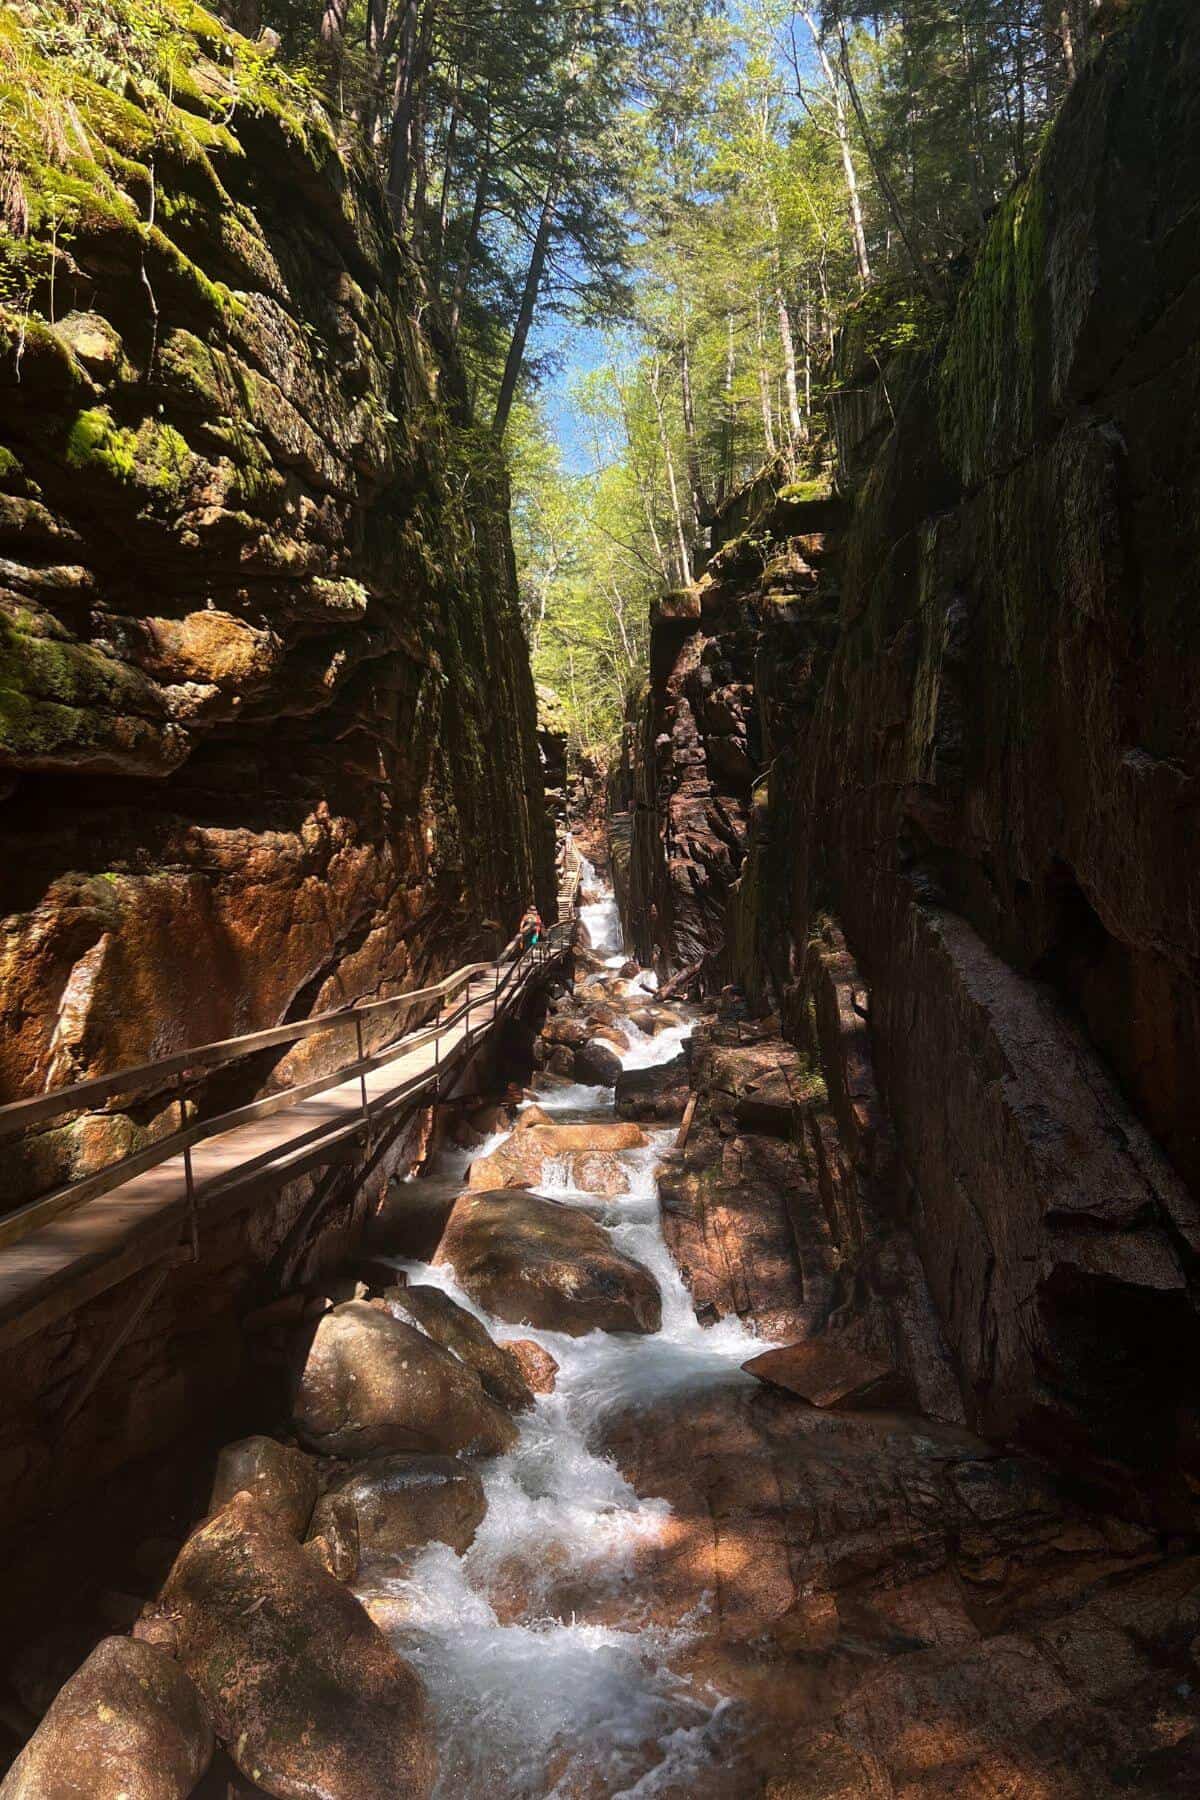 A stream runs through a canyon in a rocky area.